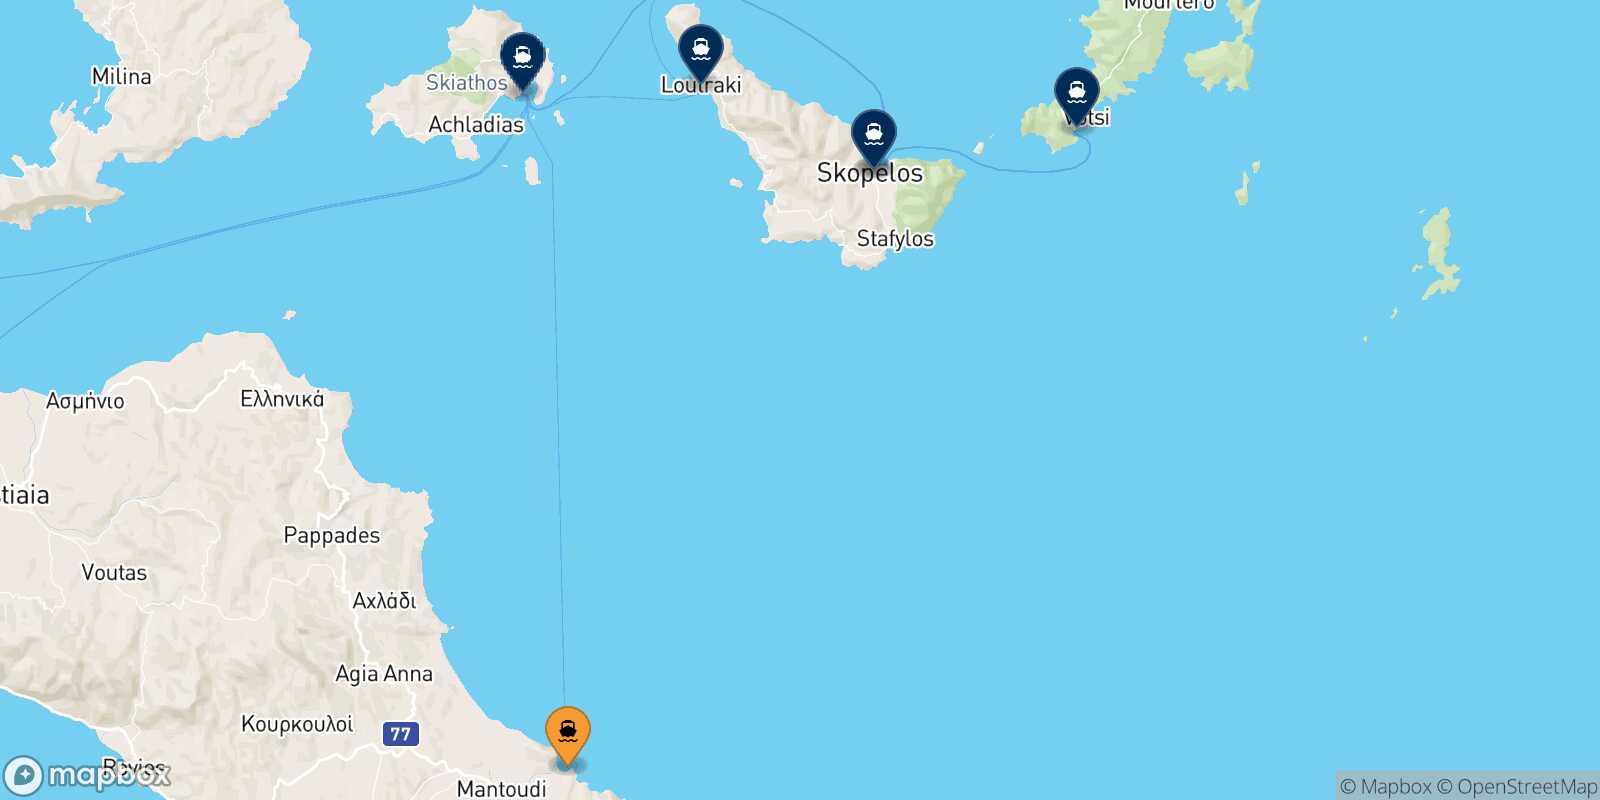 Mappa delle destinazioni raggiungibili da Mantoudi (Evia)